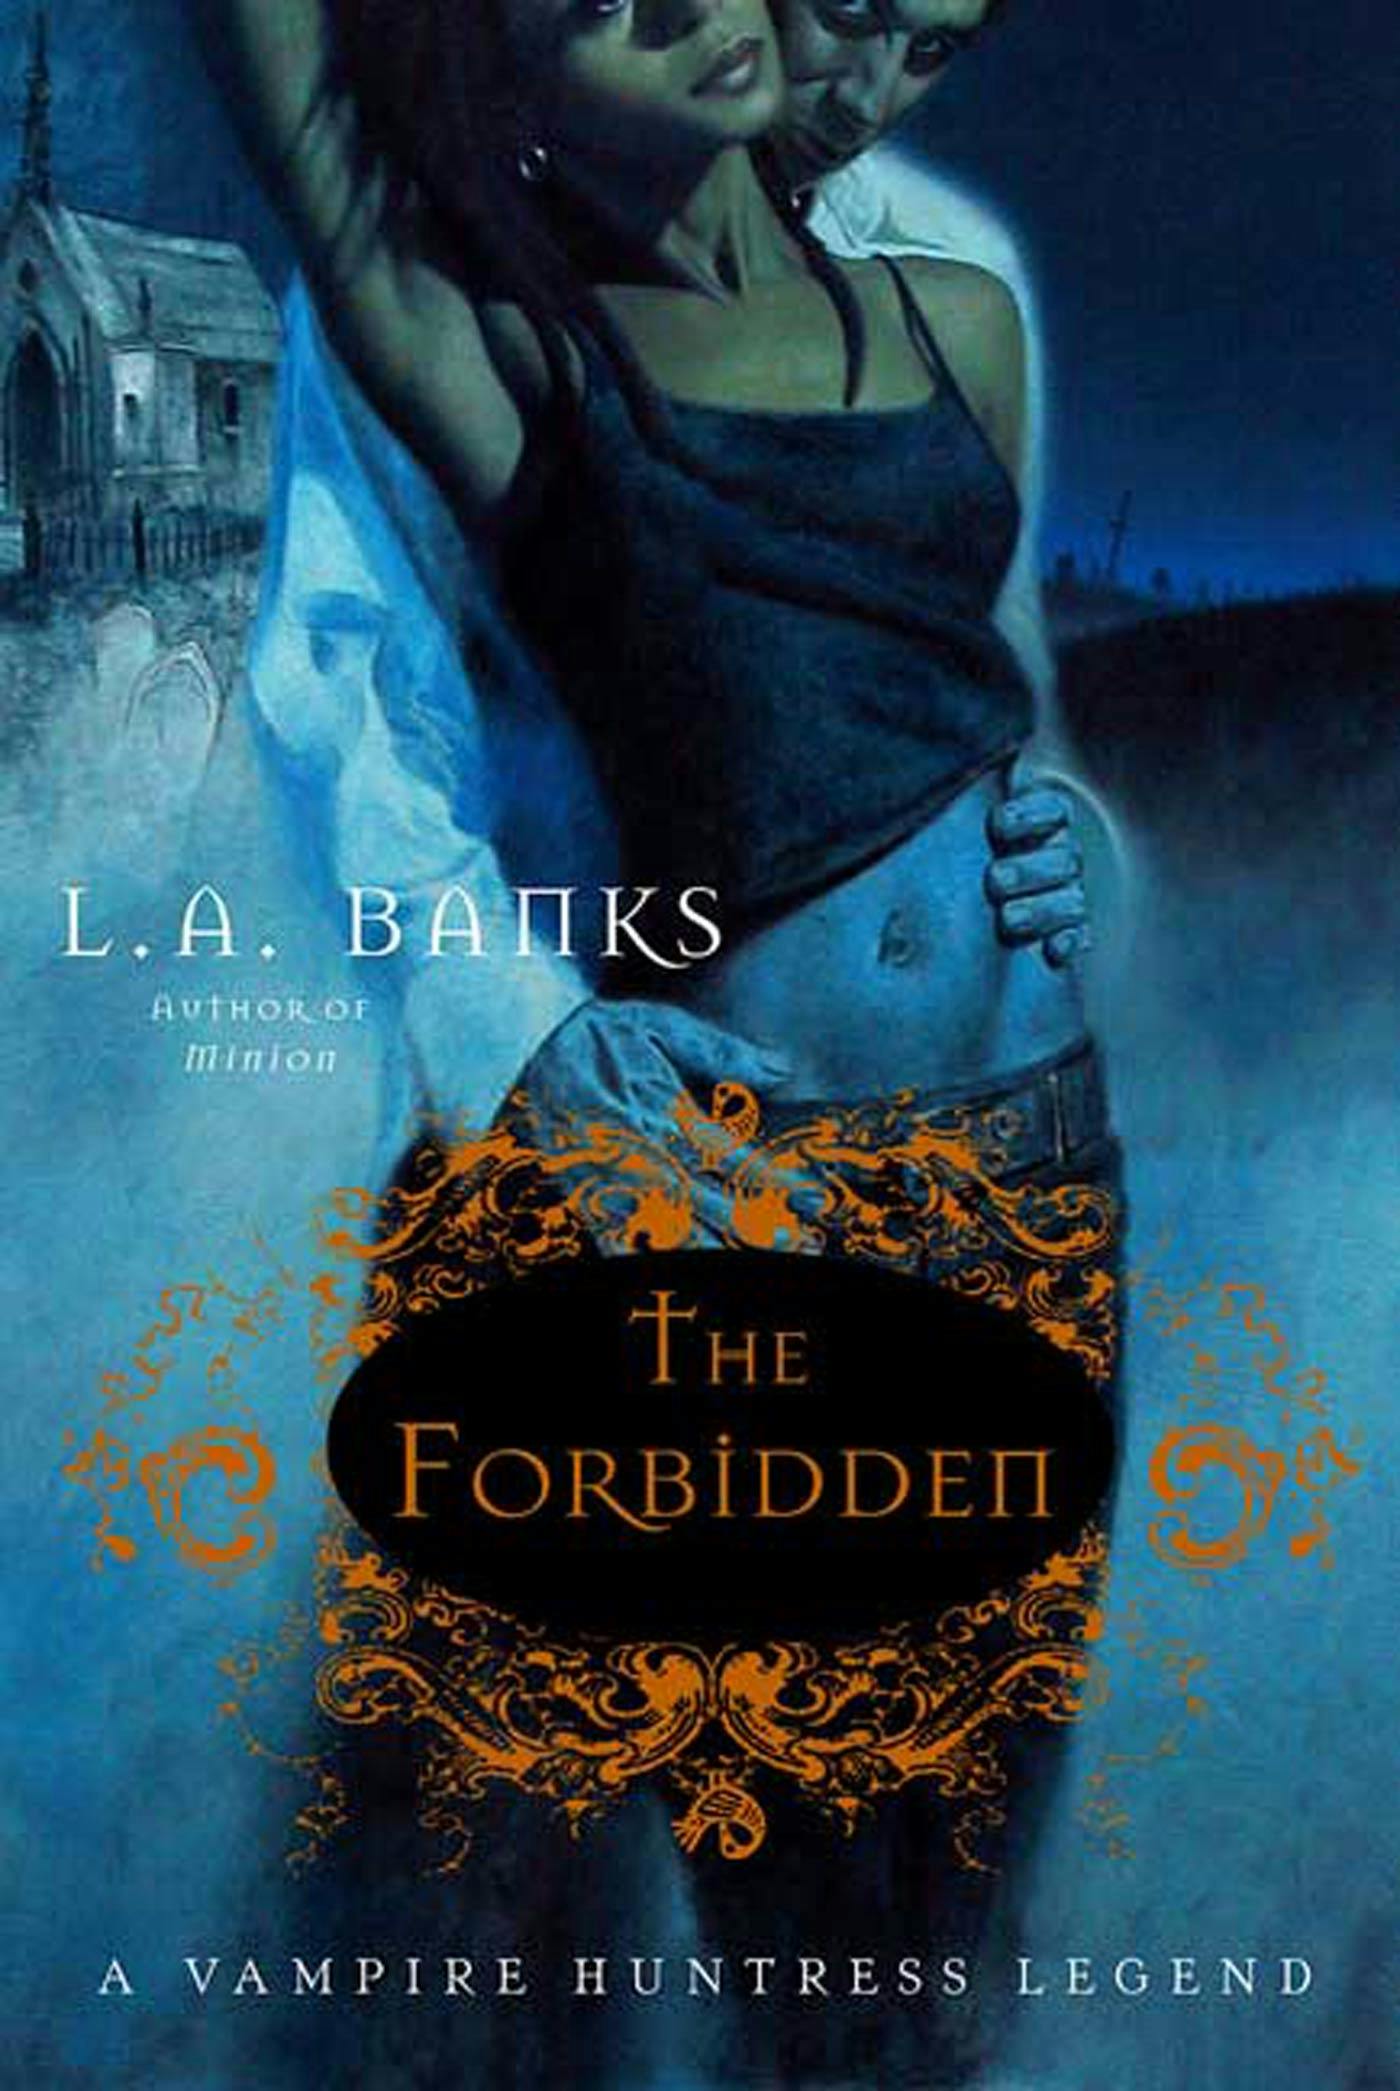 The Forbidden Book: A Novel